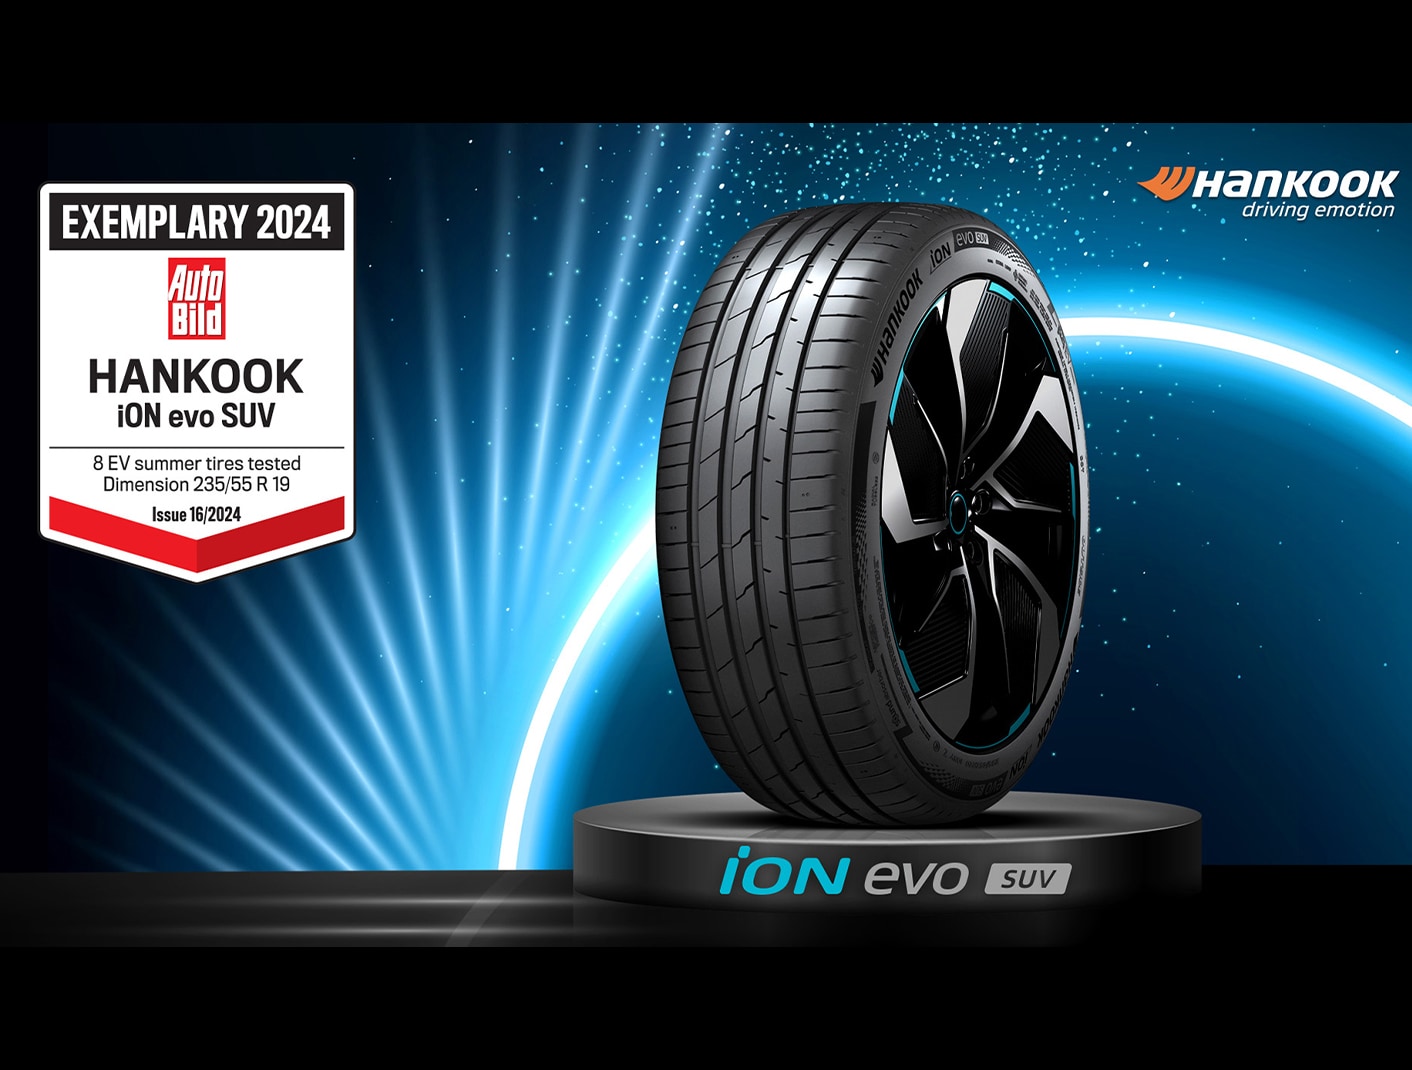 El neumático exclusivo para vehículos eléctricos de Hankook Tire, "iON evo SUV", obtiene la calificación más alta de "Ejemplar" otorgada por la revista automovilística más prestigiosa de Alemania.